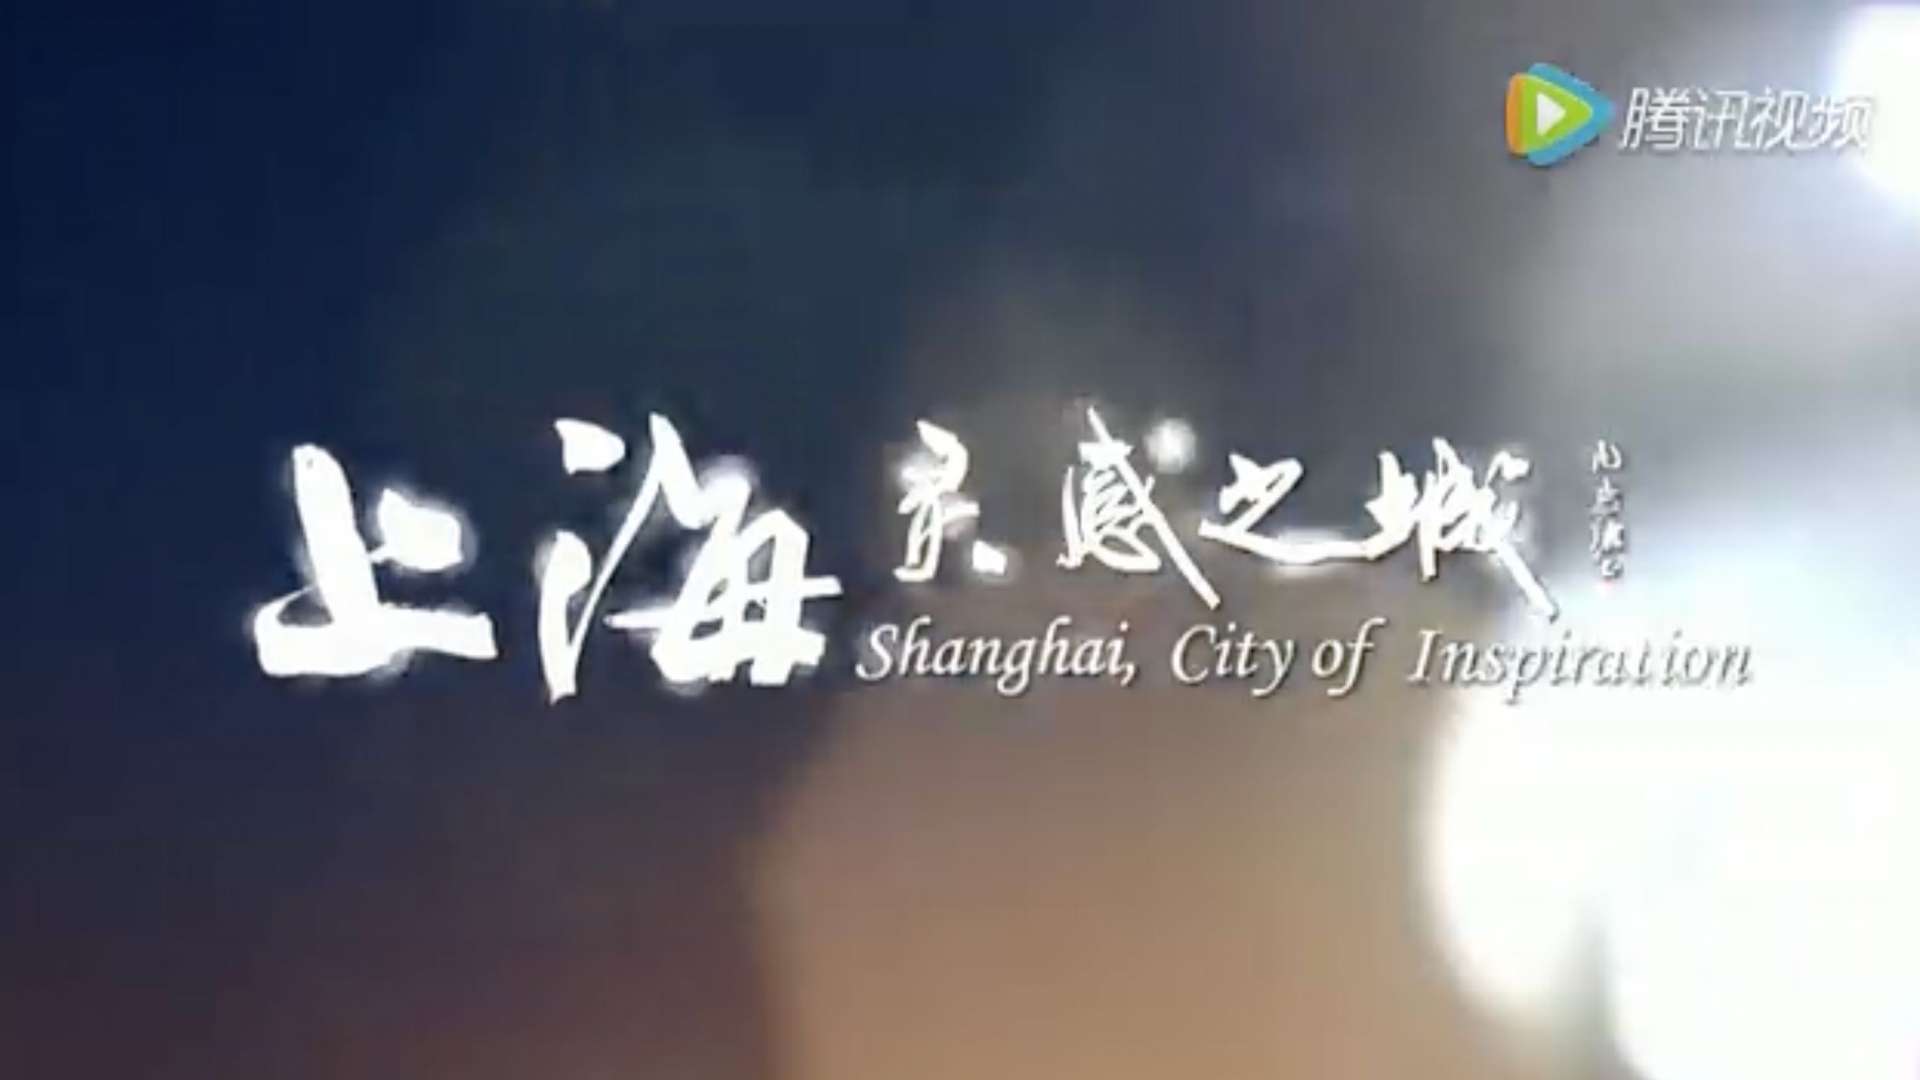 上海 灵感之城